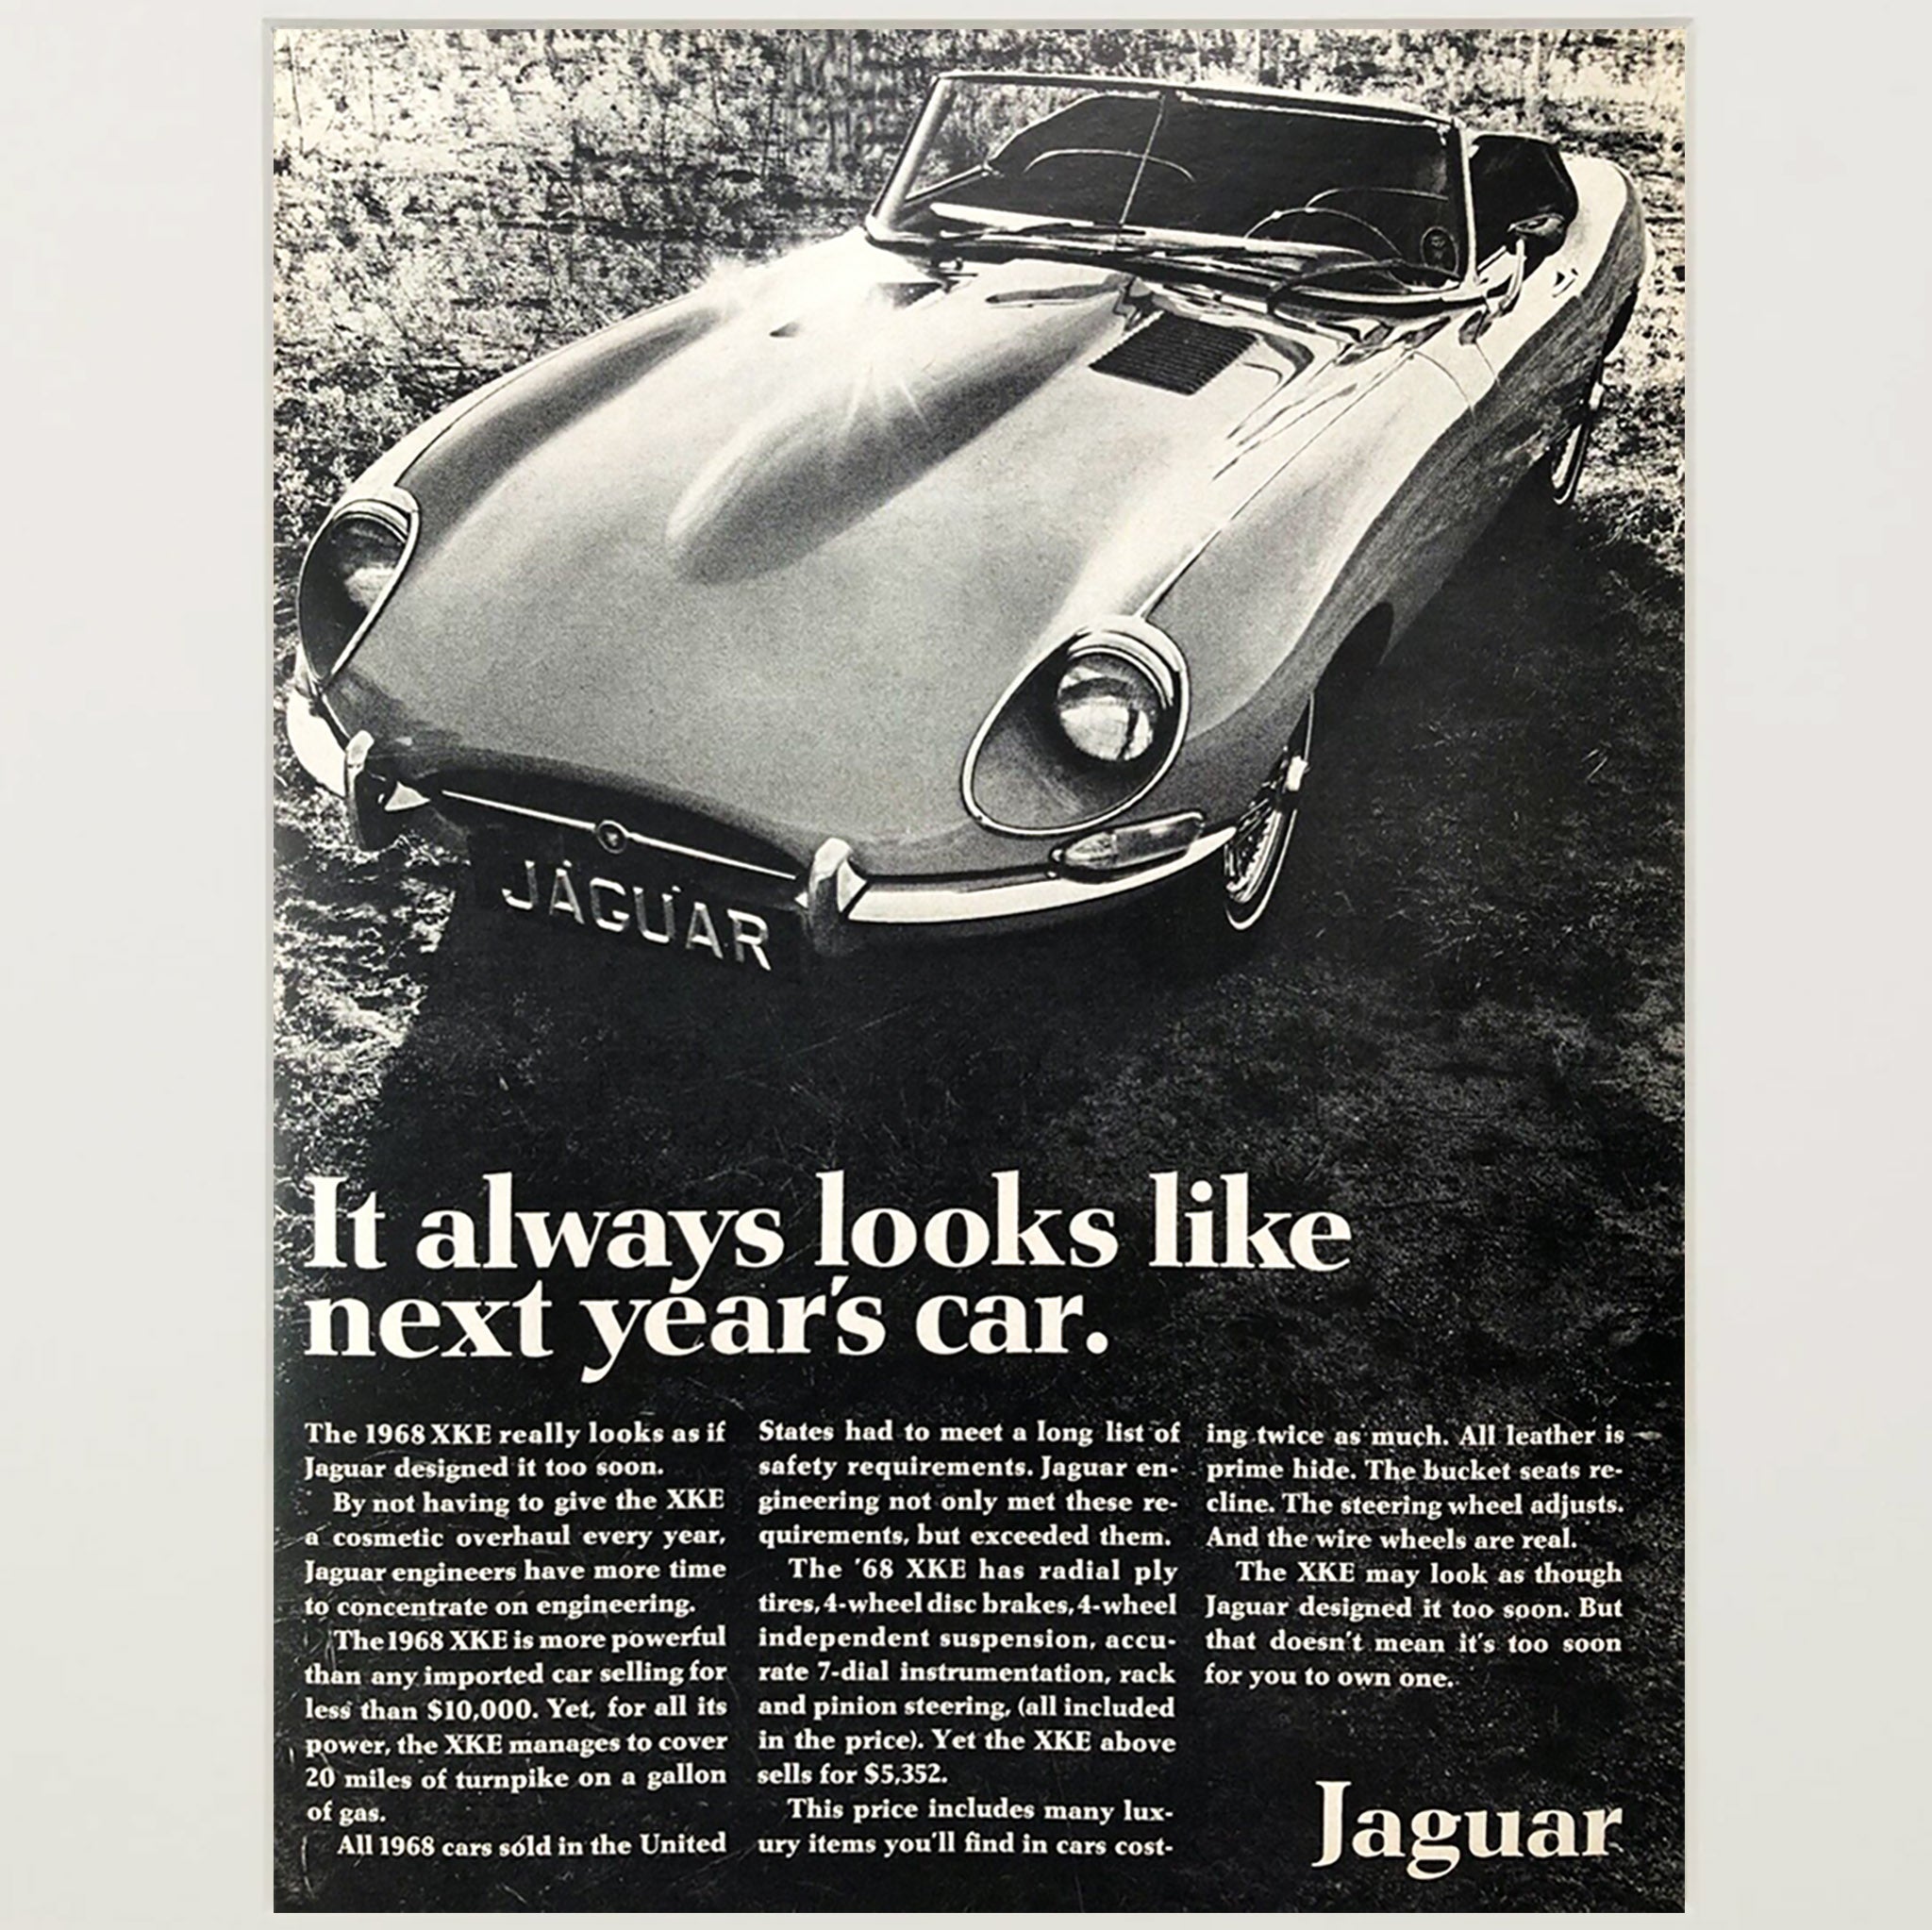 Framed 1969 Jaguar Motors E-Type Advertisement